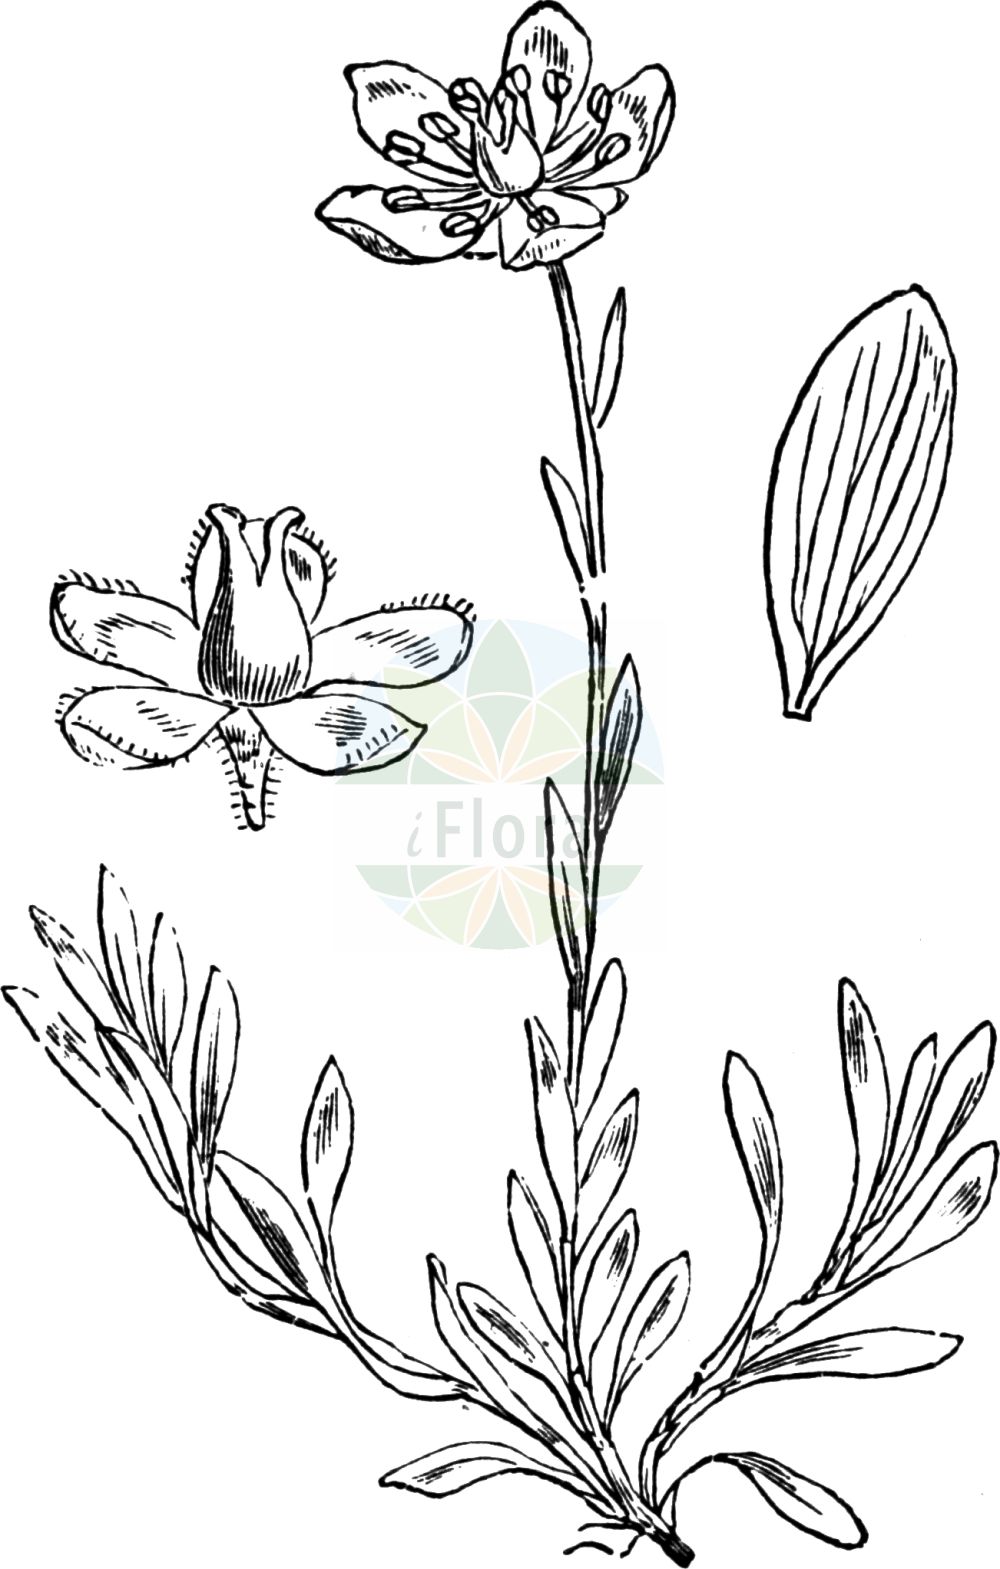 Historische Abbildung von Saxifraga hirculus (Moor-Steinbrech - Marsh Saxifrage). Das Bild zeigt Blatt, Bluete, Frucht und Same. ---- Historical Drawing of Saxifraga hirculus (Moor-Steinbrech - Marsh Saxifrage). The image is showing leaf, flower, fruit and seed.(Saxifraga hirculus,Moor-Steinbrech,Marsh Saxifrage,Saxifraga autumnalis,Saxifraga hirculus,Moor-Steinbrech,Bock-Steinbrech,Marsh Saxifrage,Yellow Marsh Saxifrage,Saxifraga,Steinbrech,Saxifrage,Saxifragaceae,Steinbrechgewächse,Saxifrage family,Blatt,Bluete,Frucht,Same,leaf,flower,fruit,seed,Fitch et al. (1880))